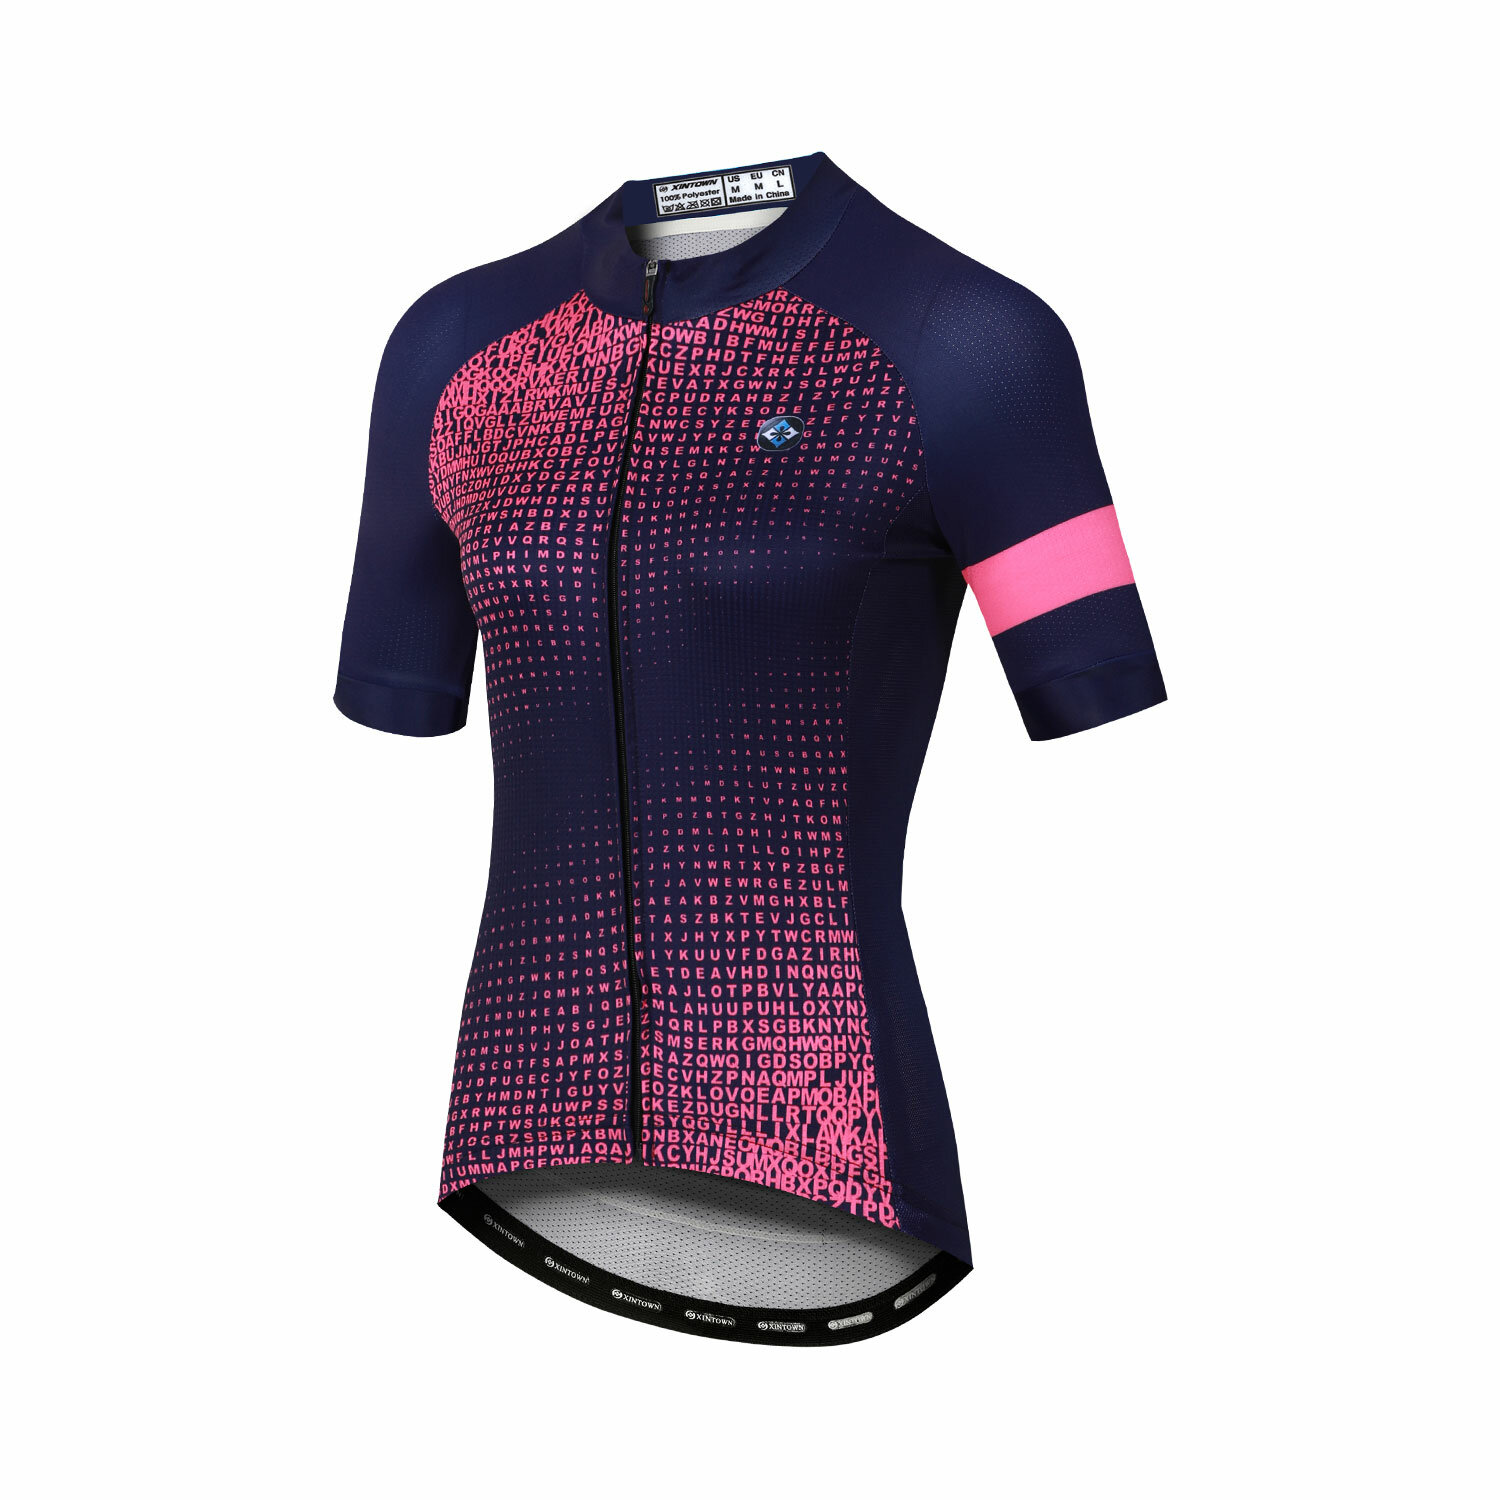 XINTOWN Camisa de ciclismo de absorção de umidade para homens e mulheres em tecido sintético respirável com padrões divertidos, perfeita para andar de bicicleta no verão.